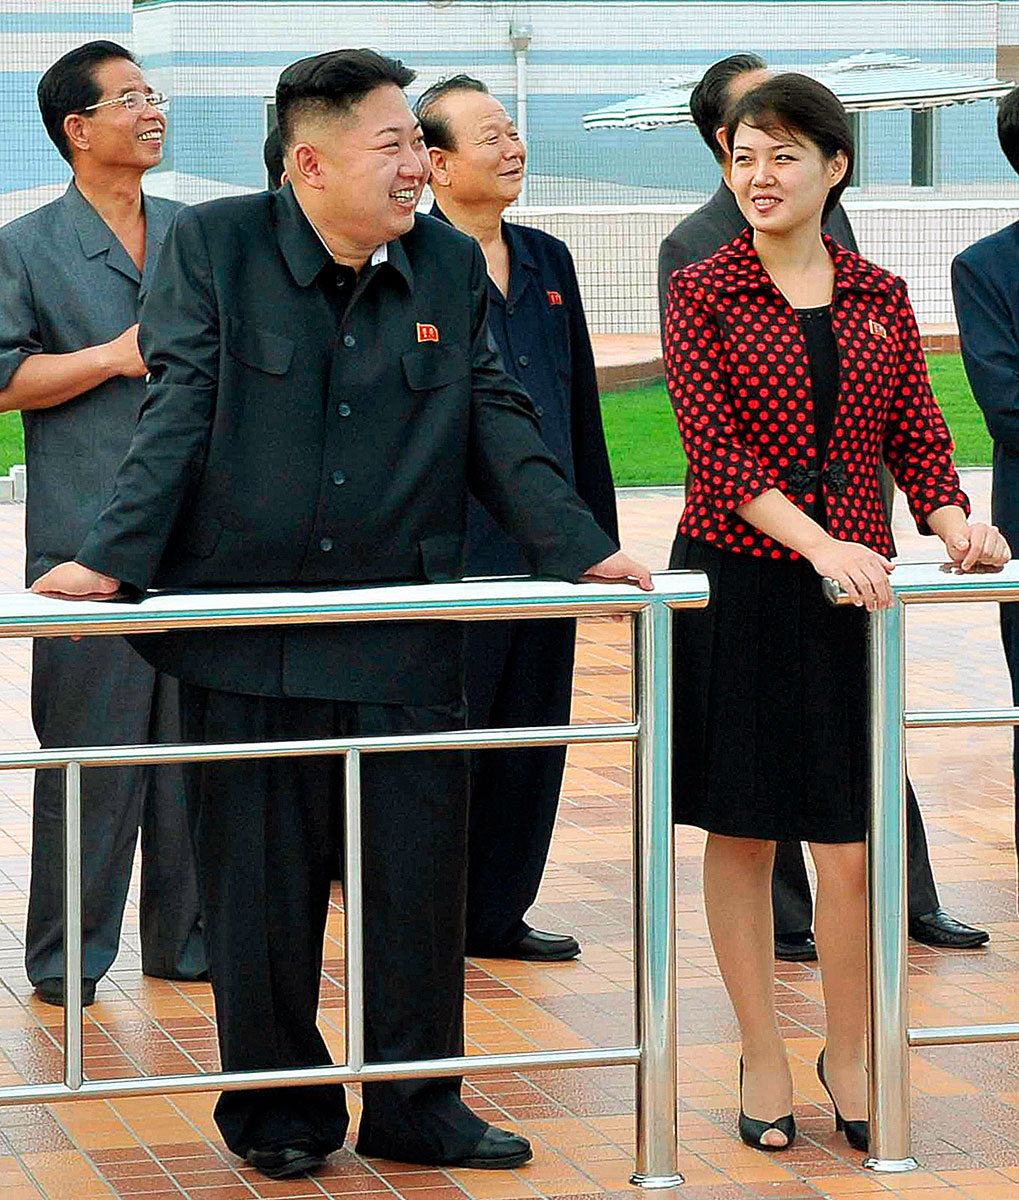 Kim Dzsong Un, feleségével, „Rzsi Szol Dzsu elvtársnővel”.